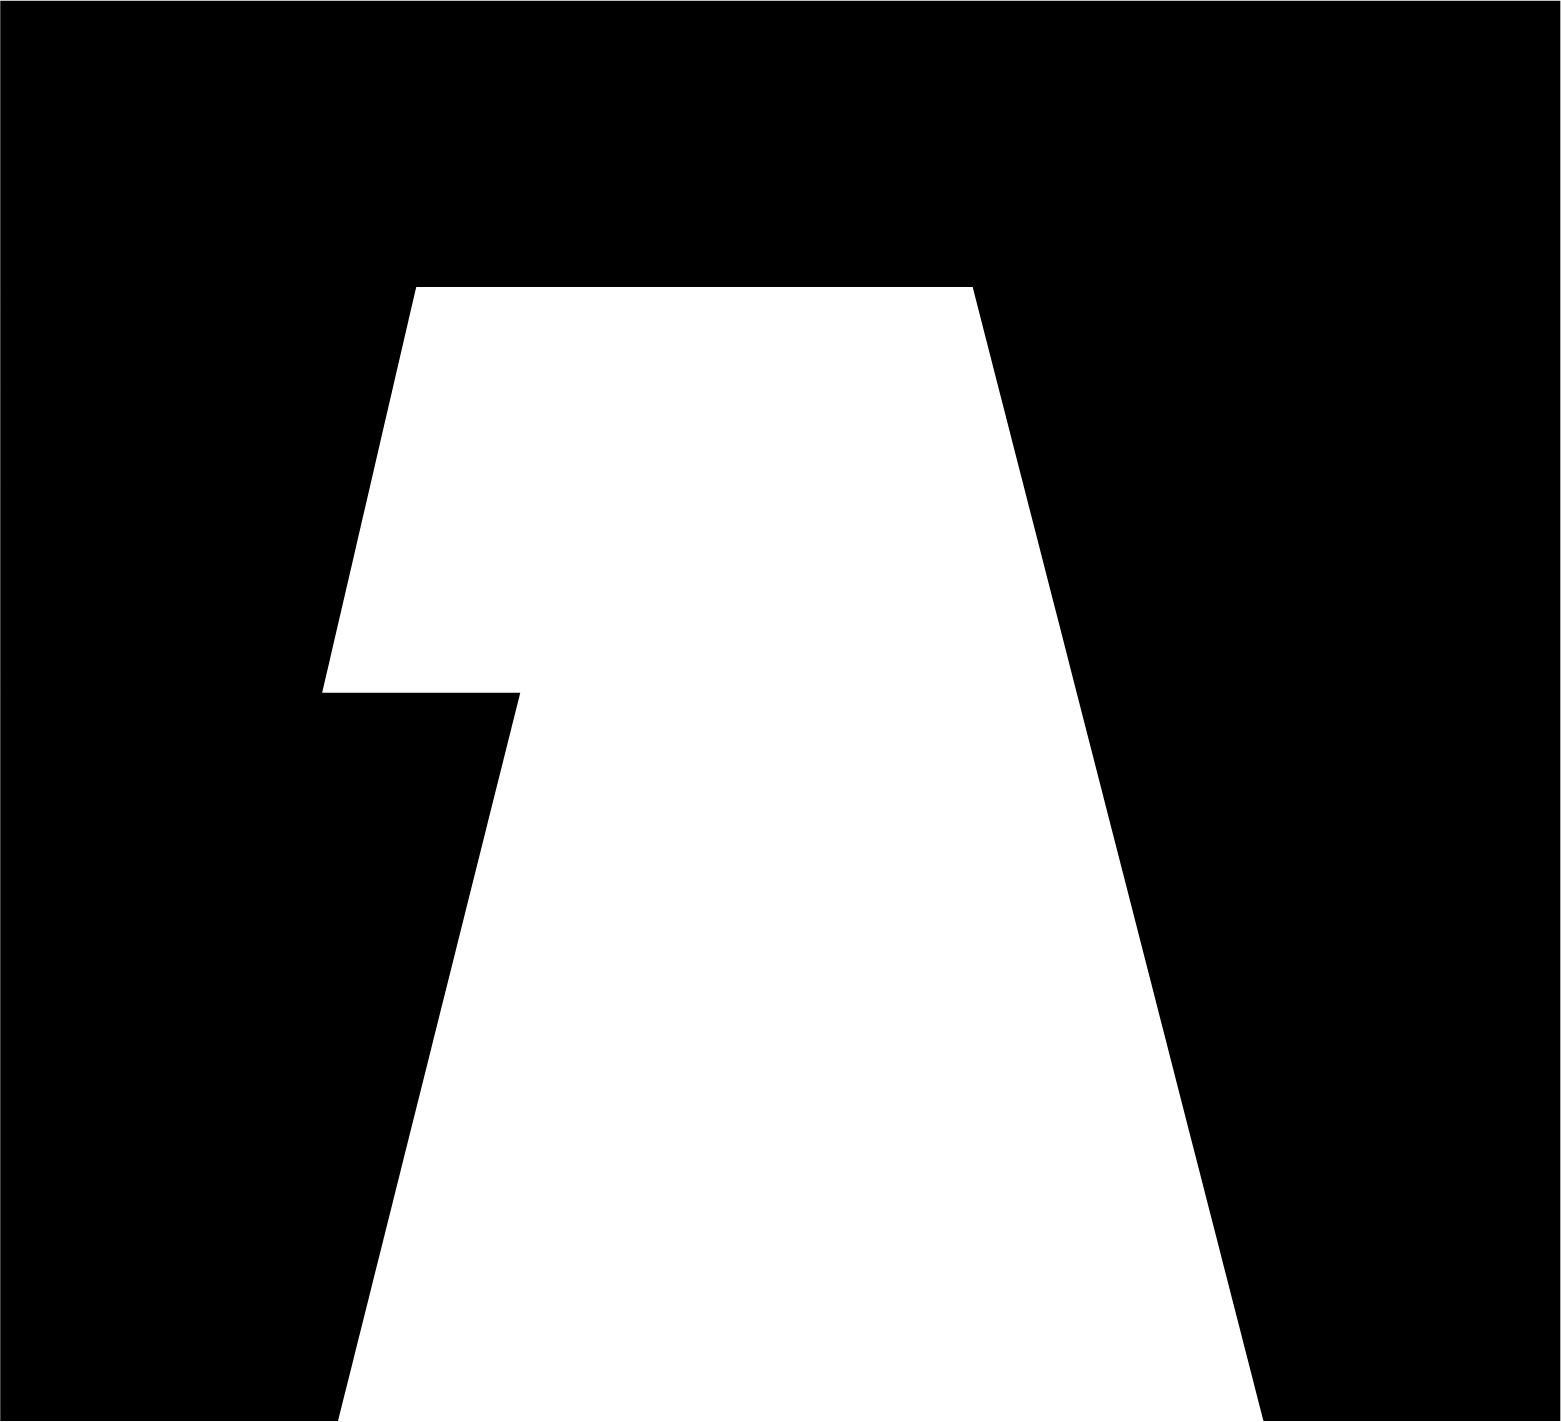 Adler Group logo (transparent PNG)